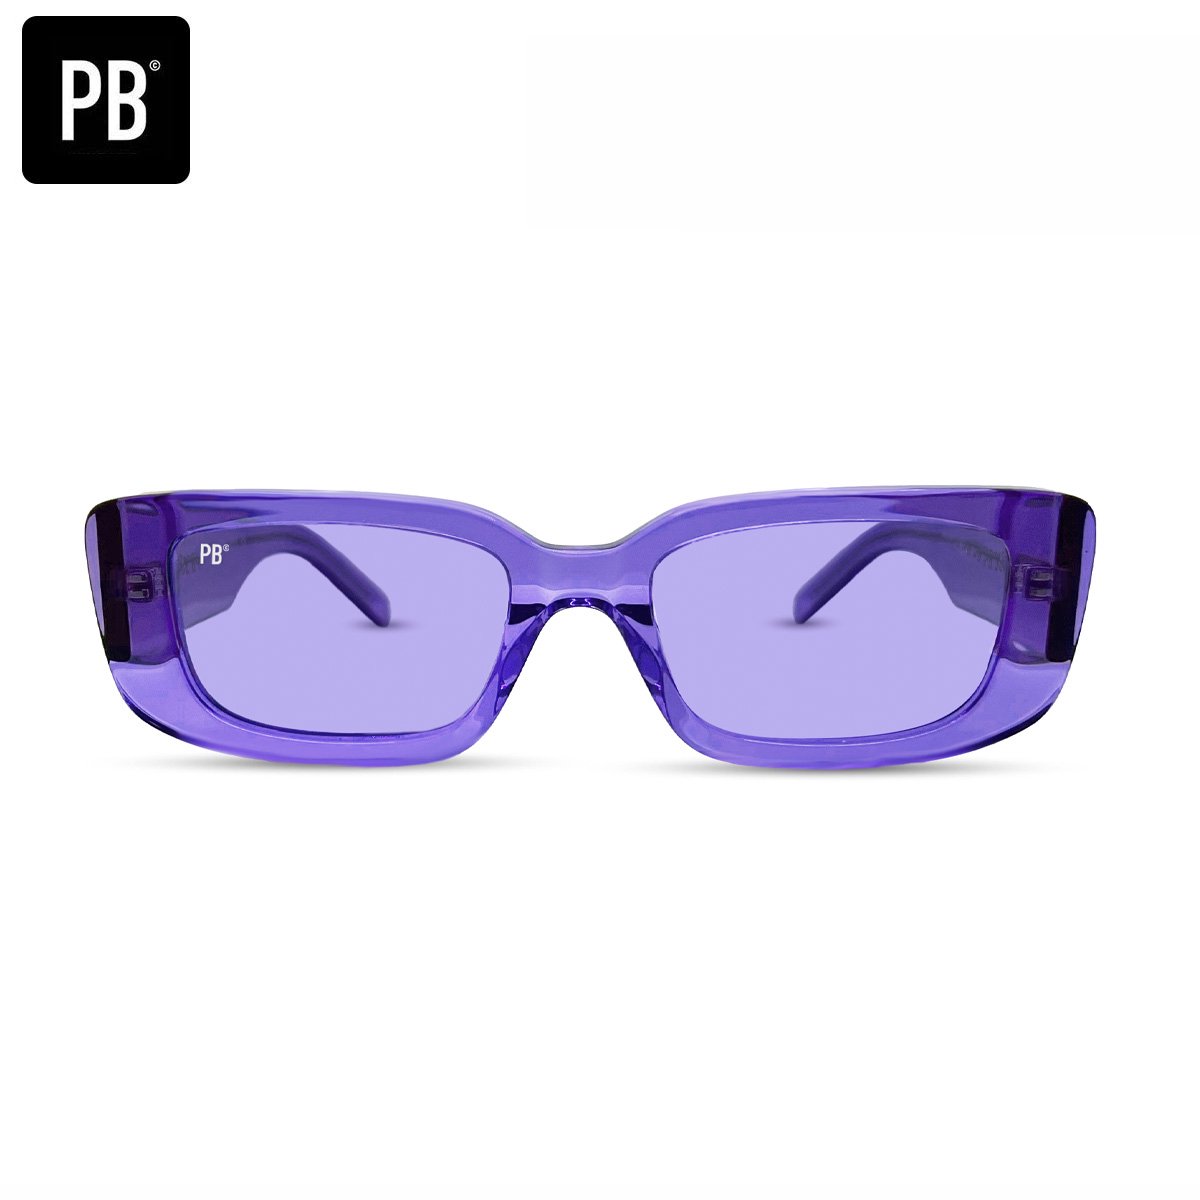 PB Sunglasses - Cody Purple. - Zonnebril dames - Gepolariseerd - Paars design - Rechthoekig - Sterk Acetaat frame